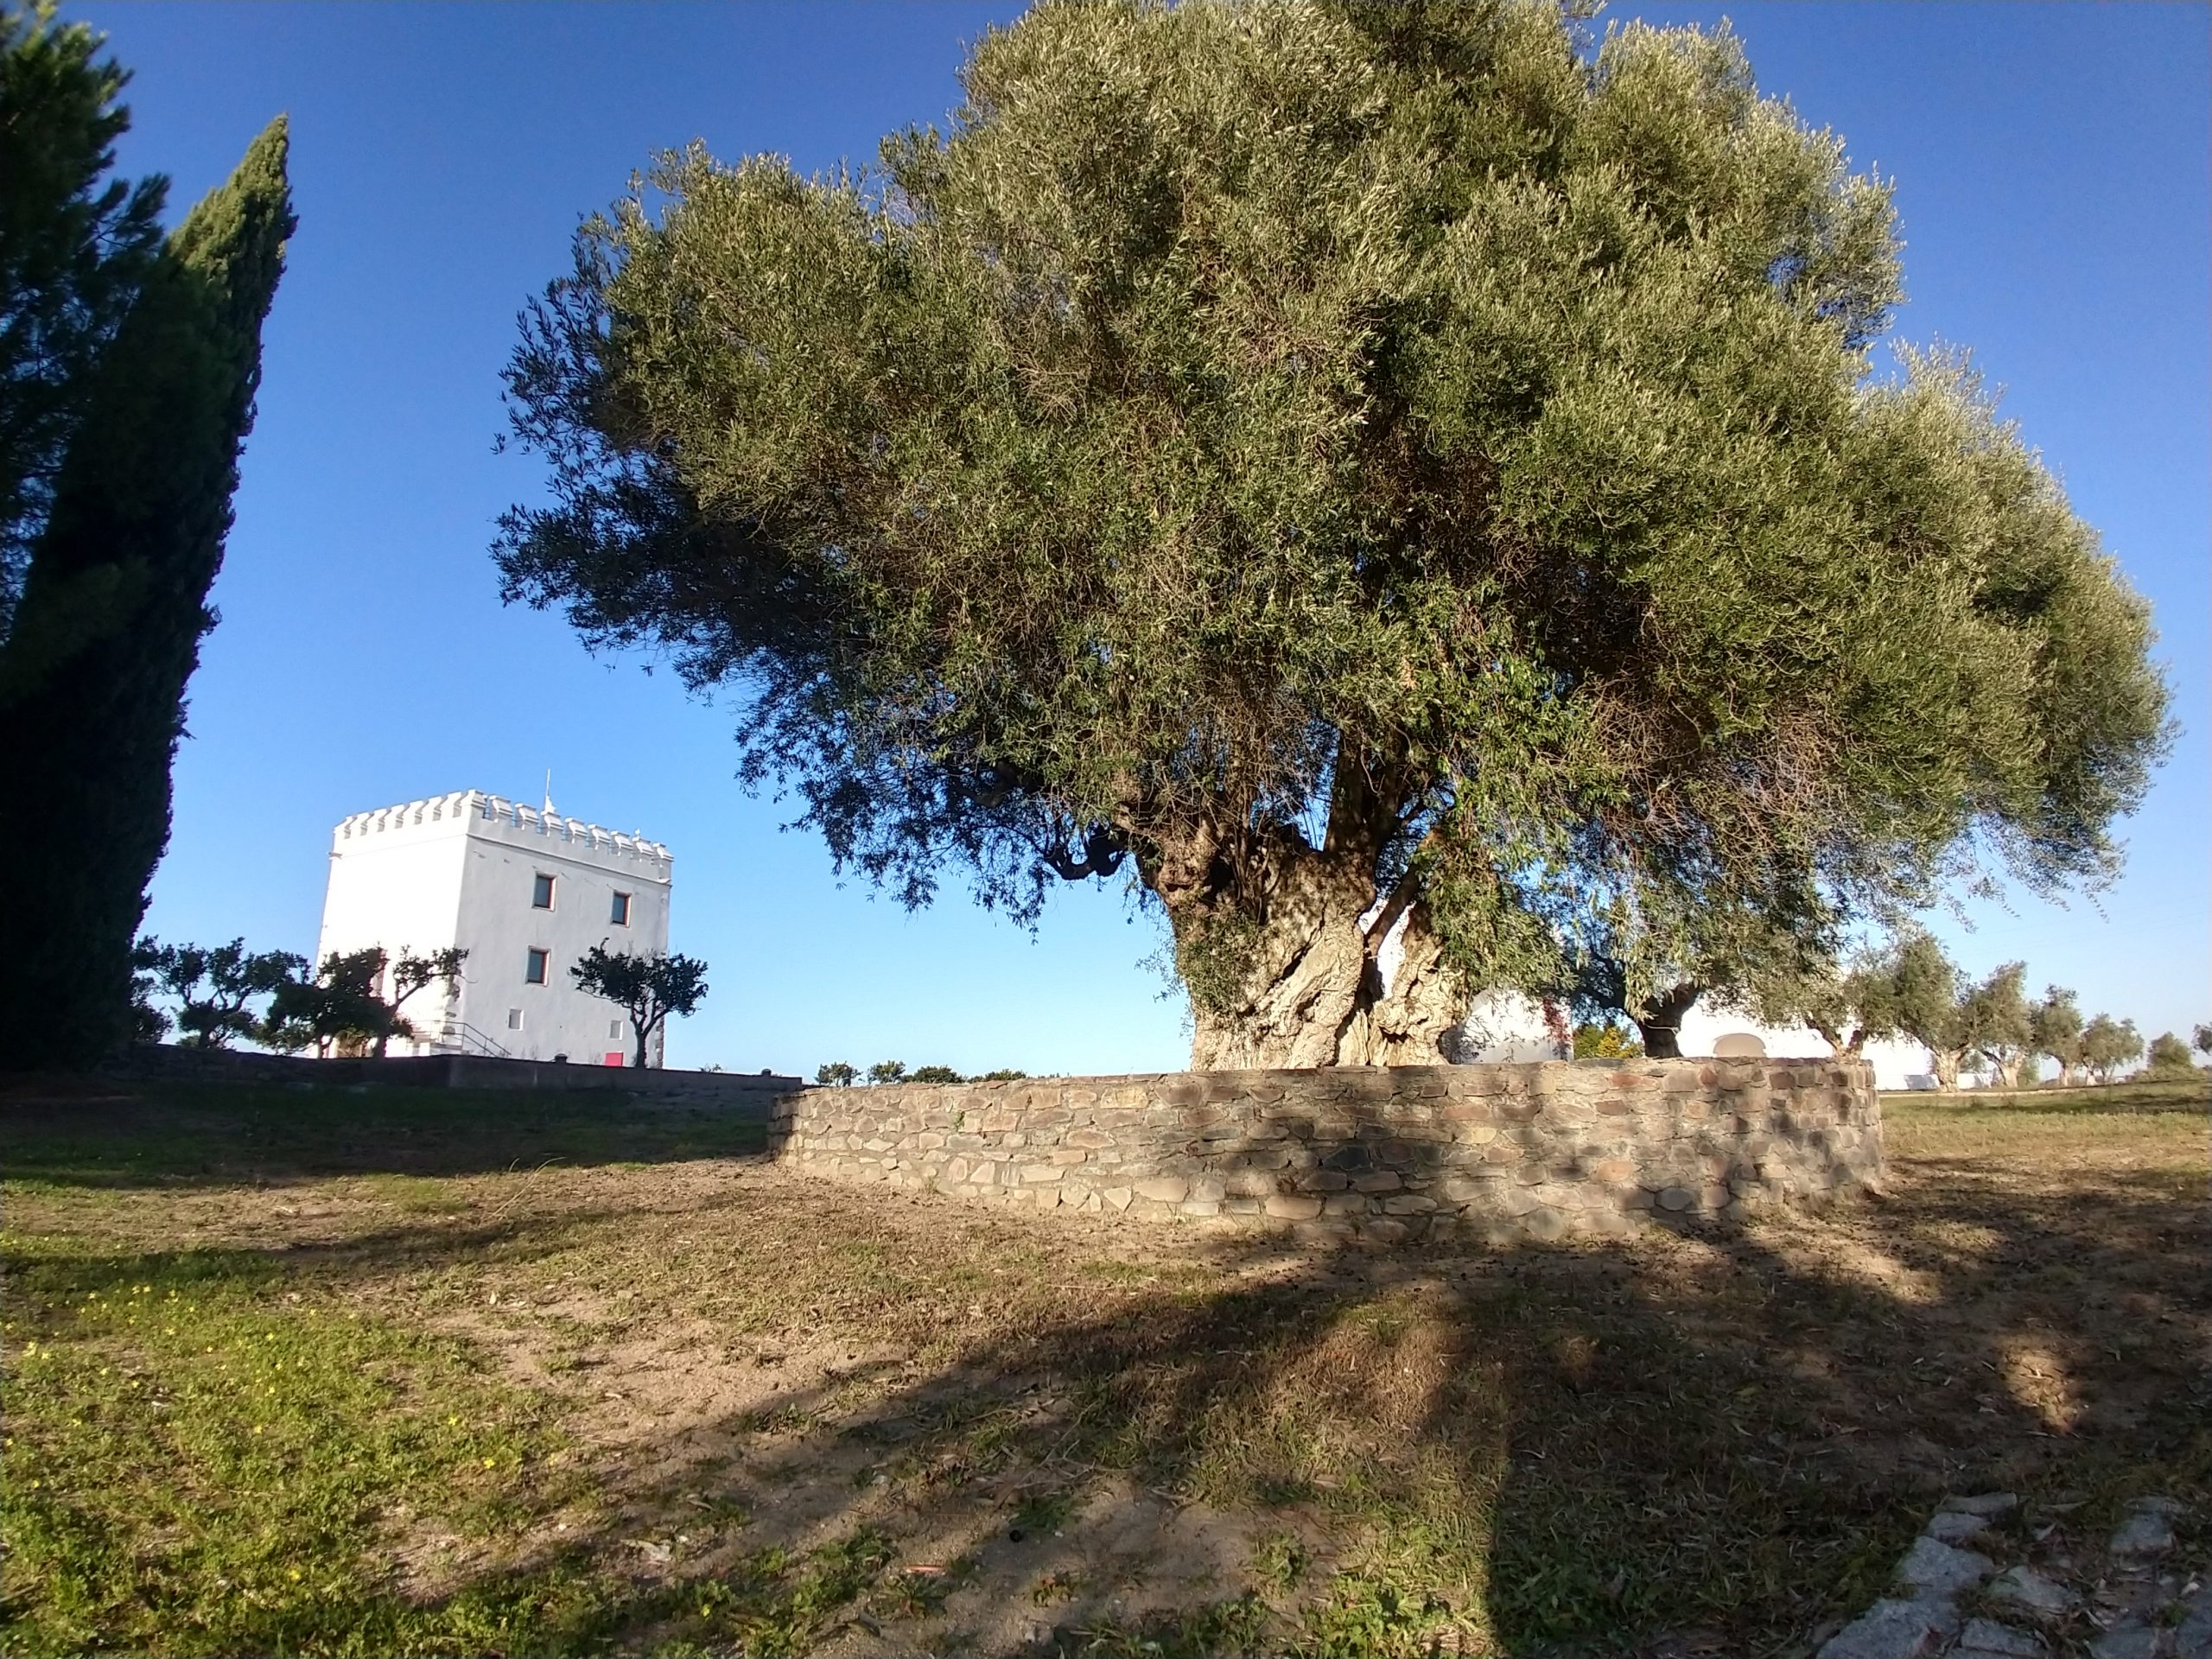 Esporão tower and olive tree